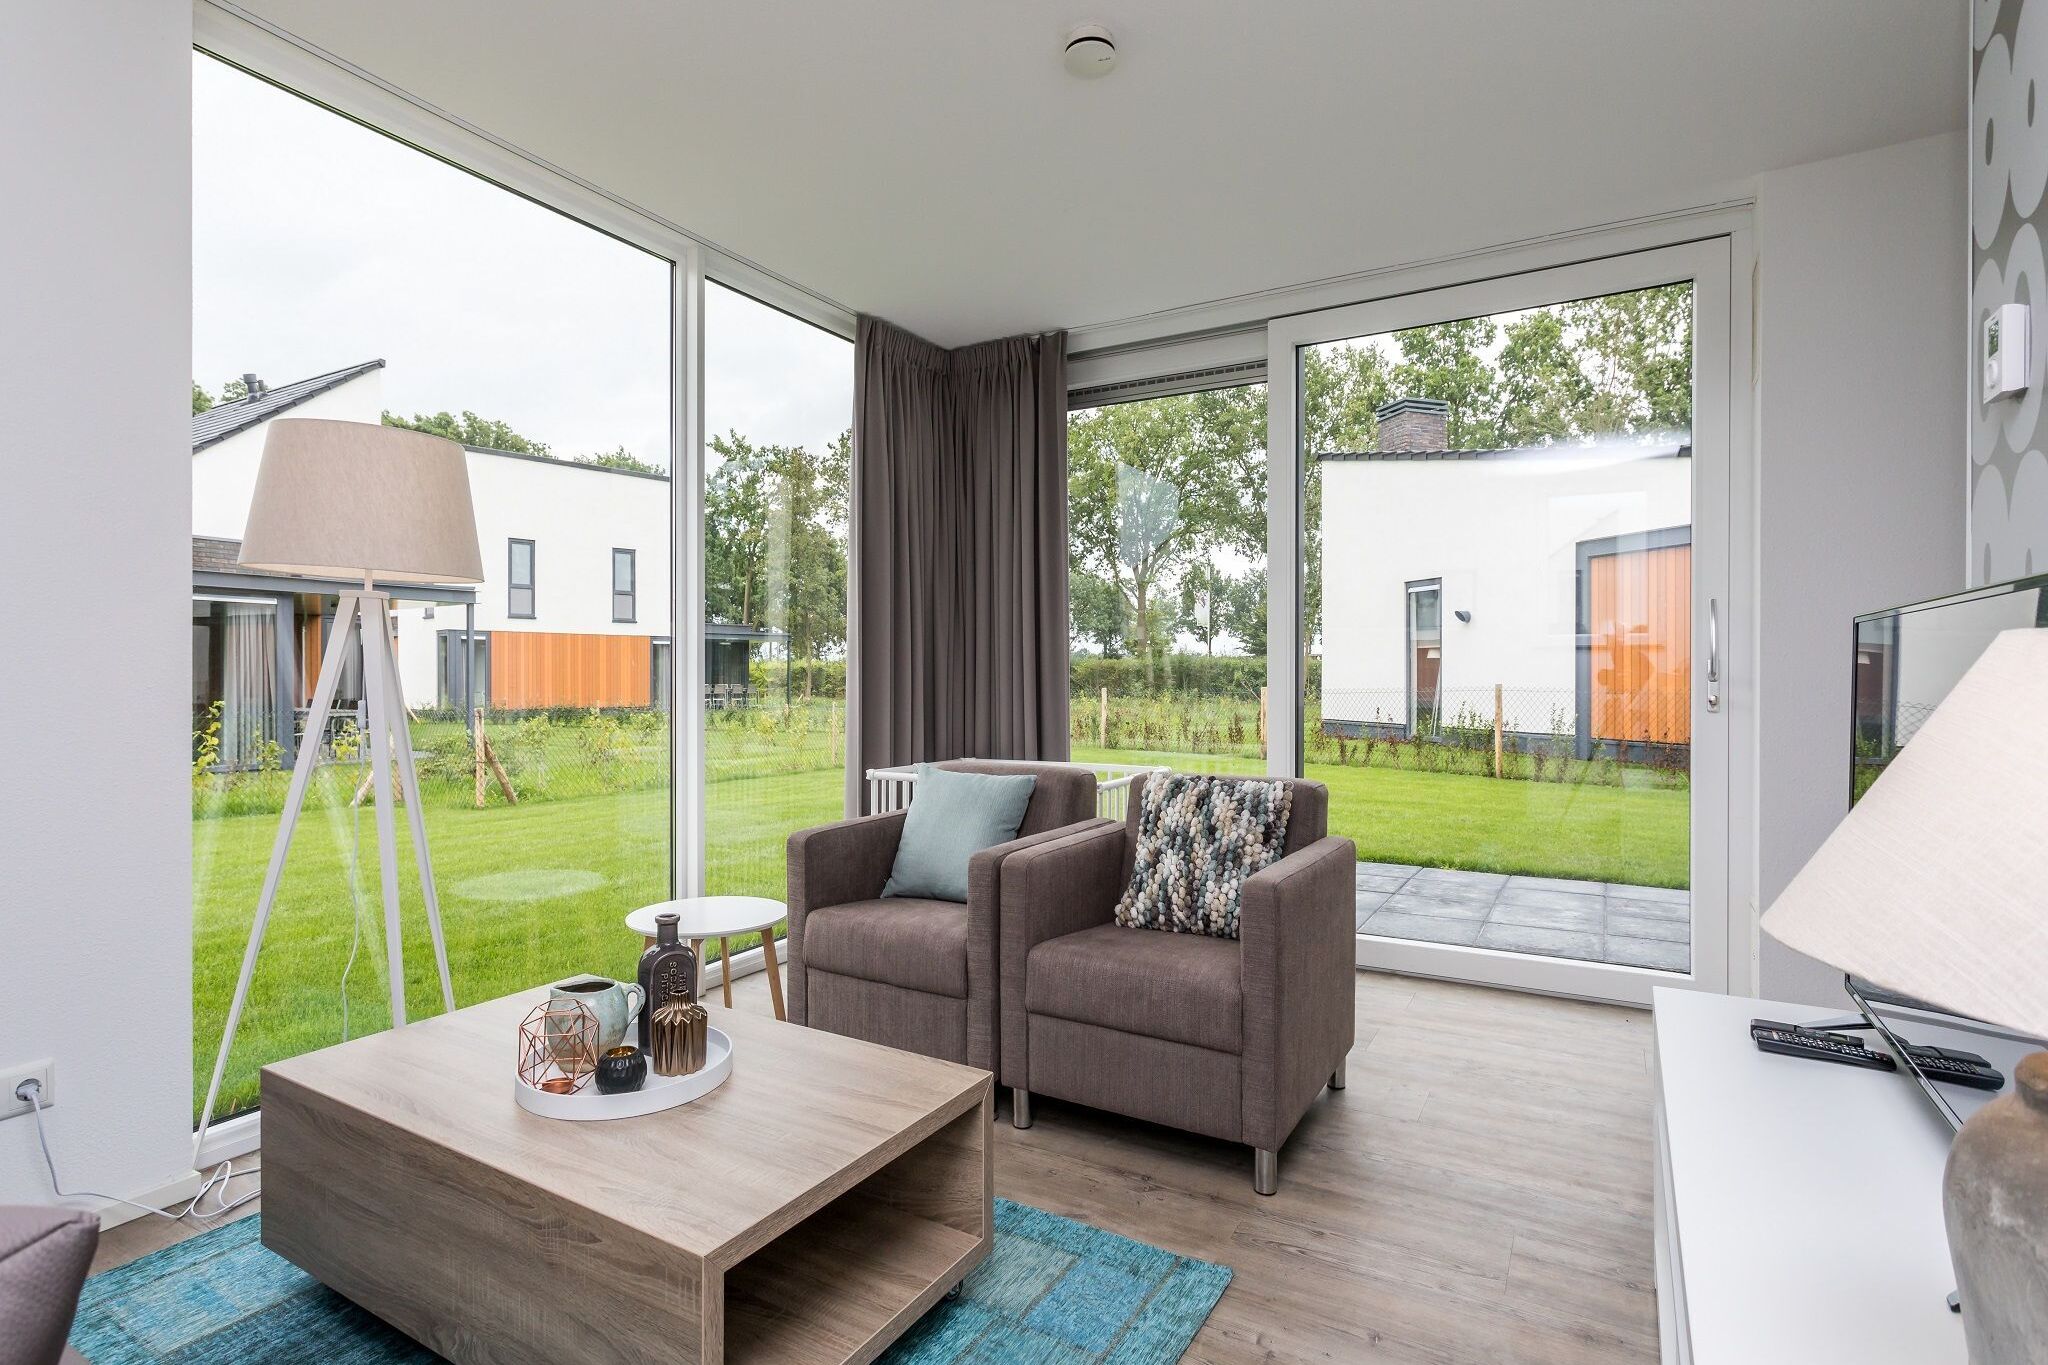 Villa avec salle des enfants en Med à Limburg